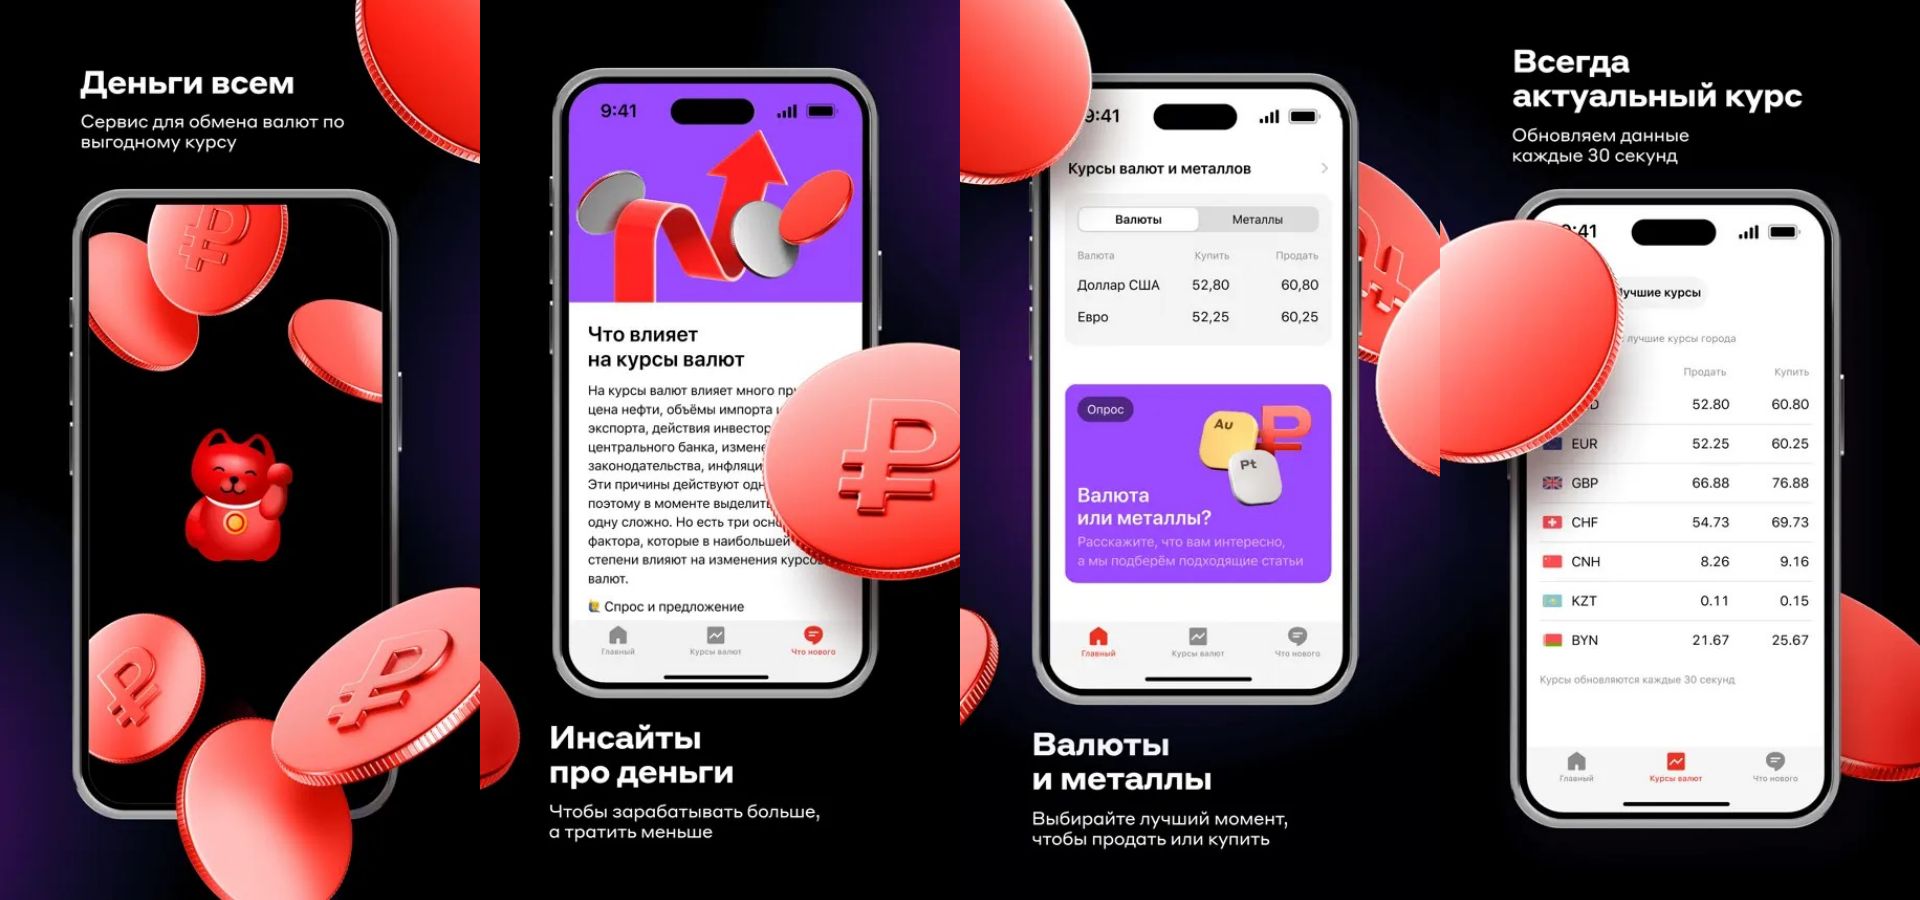 Новое приложение «Деньги всем» в App Store рекомендовано всем клиентам « Альфа-Банка» — Wylsacom